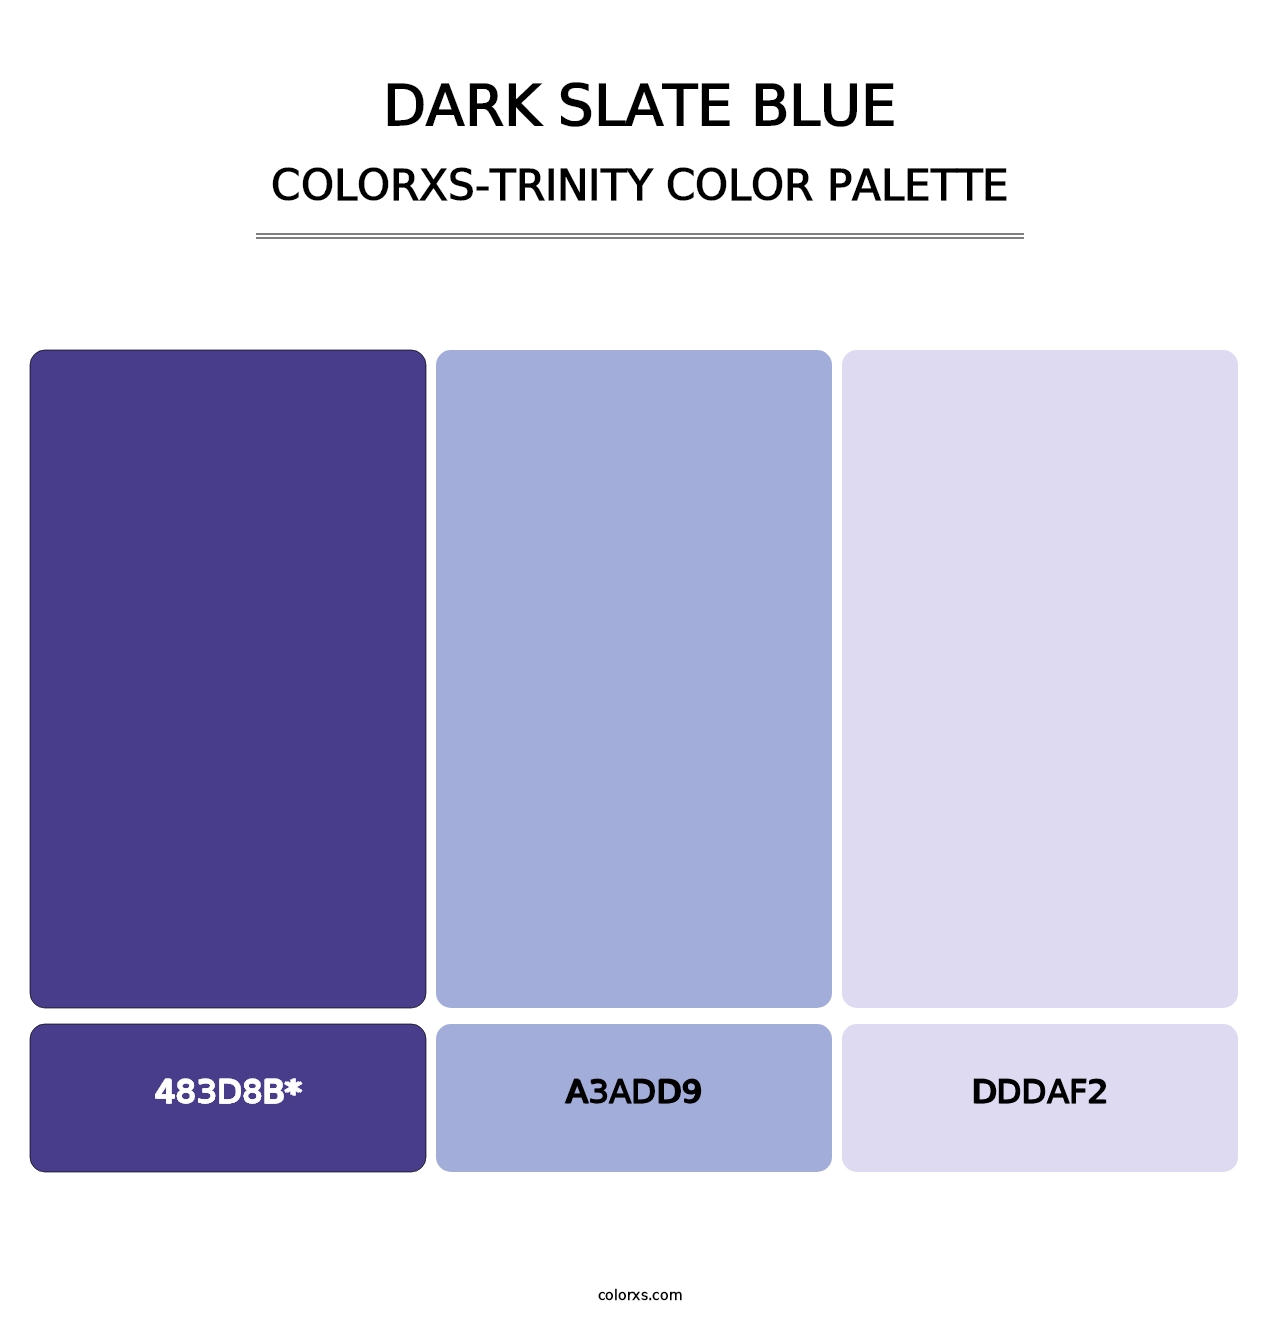 Dark Slate Blue - Colorxs Trinity Palette